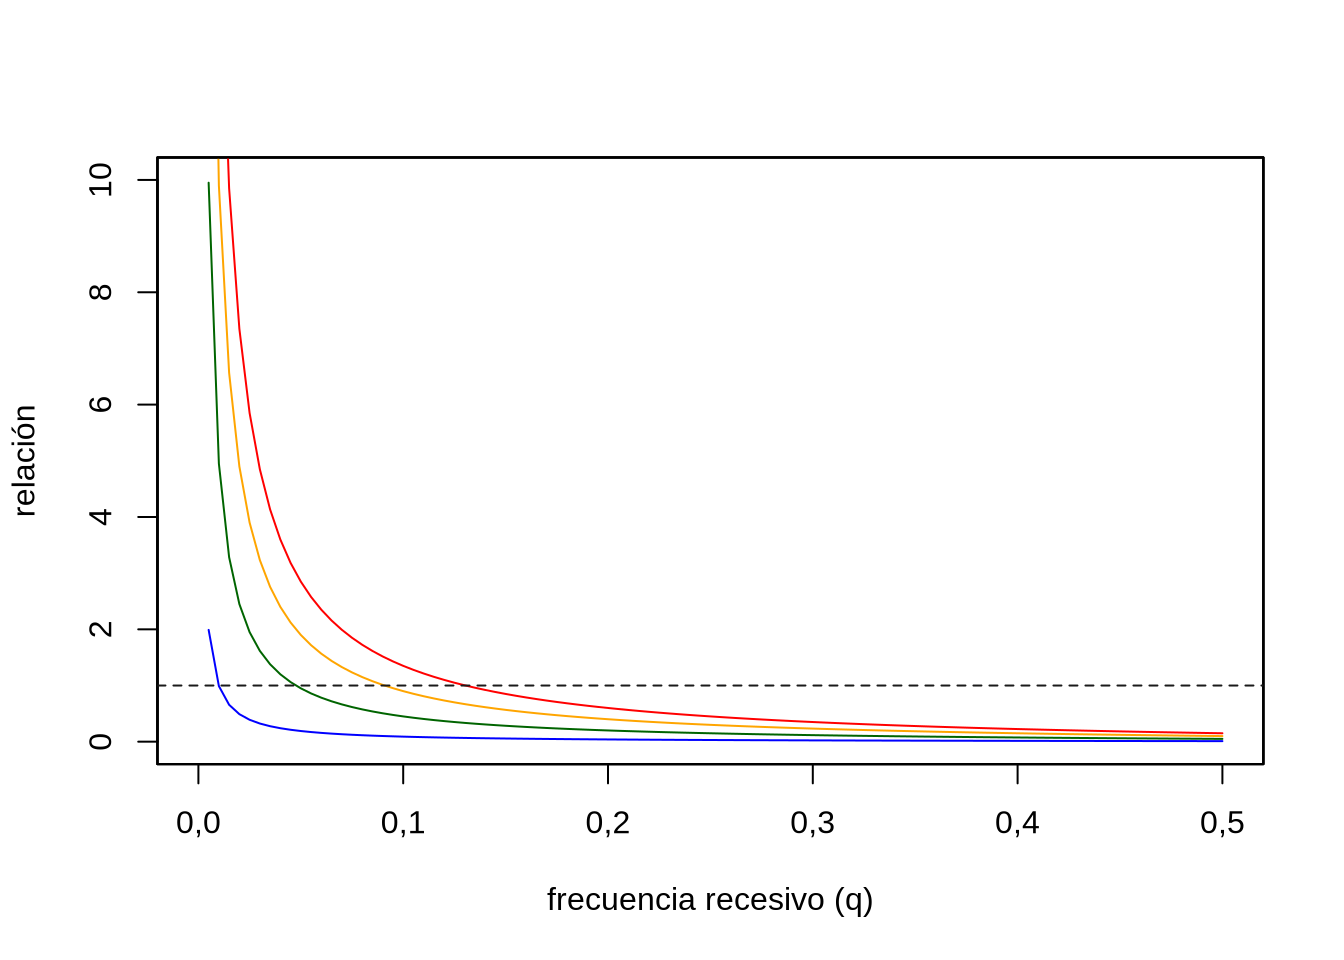 Relación entre el aporte de homocigotos debido a la endogamia y el aporte esperado en ausencia de endogamia, es decir \(\frac{pqF}{q^2}\), en función de la frecuencia del alelo recesivo (\(q\)) para cuatro valores del coeficiente de endocría (\(F=0,01\) azul, \(F=0,05\) verde, \(F=0,10\) anaranjado y \(F=0,15\) rojo). Cuando la relación vale \(1\) (línea a trazos) ambos aportes son iguales, mientras que para valores mayores a \(1\) solo el aporte debido a la endogamia es mayor que lo esperado en ausencia de ella. Claramente, cuanto más baja es la frecuencia del alelo recesivo mayor importancia relativa adquiere el componente debido a la endogamia.